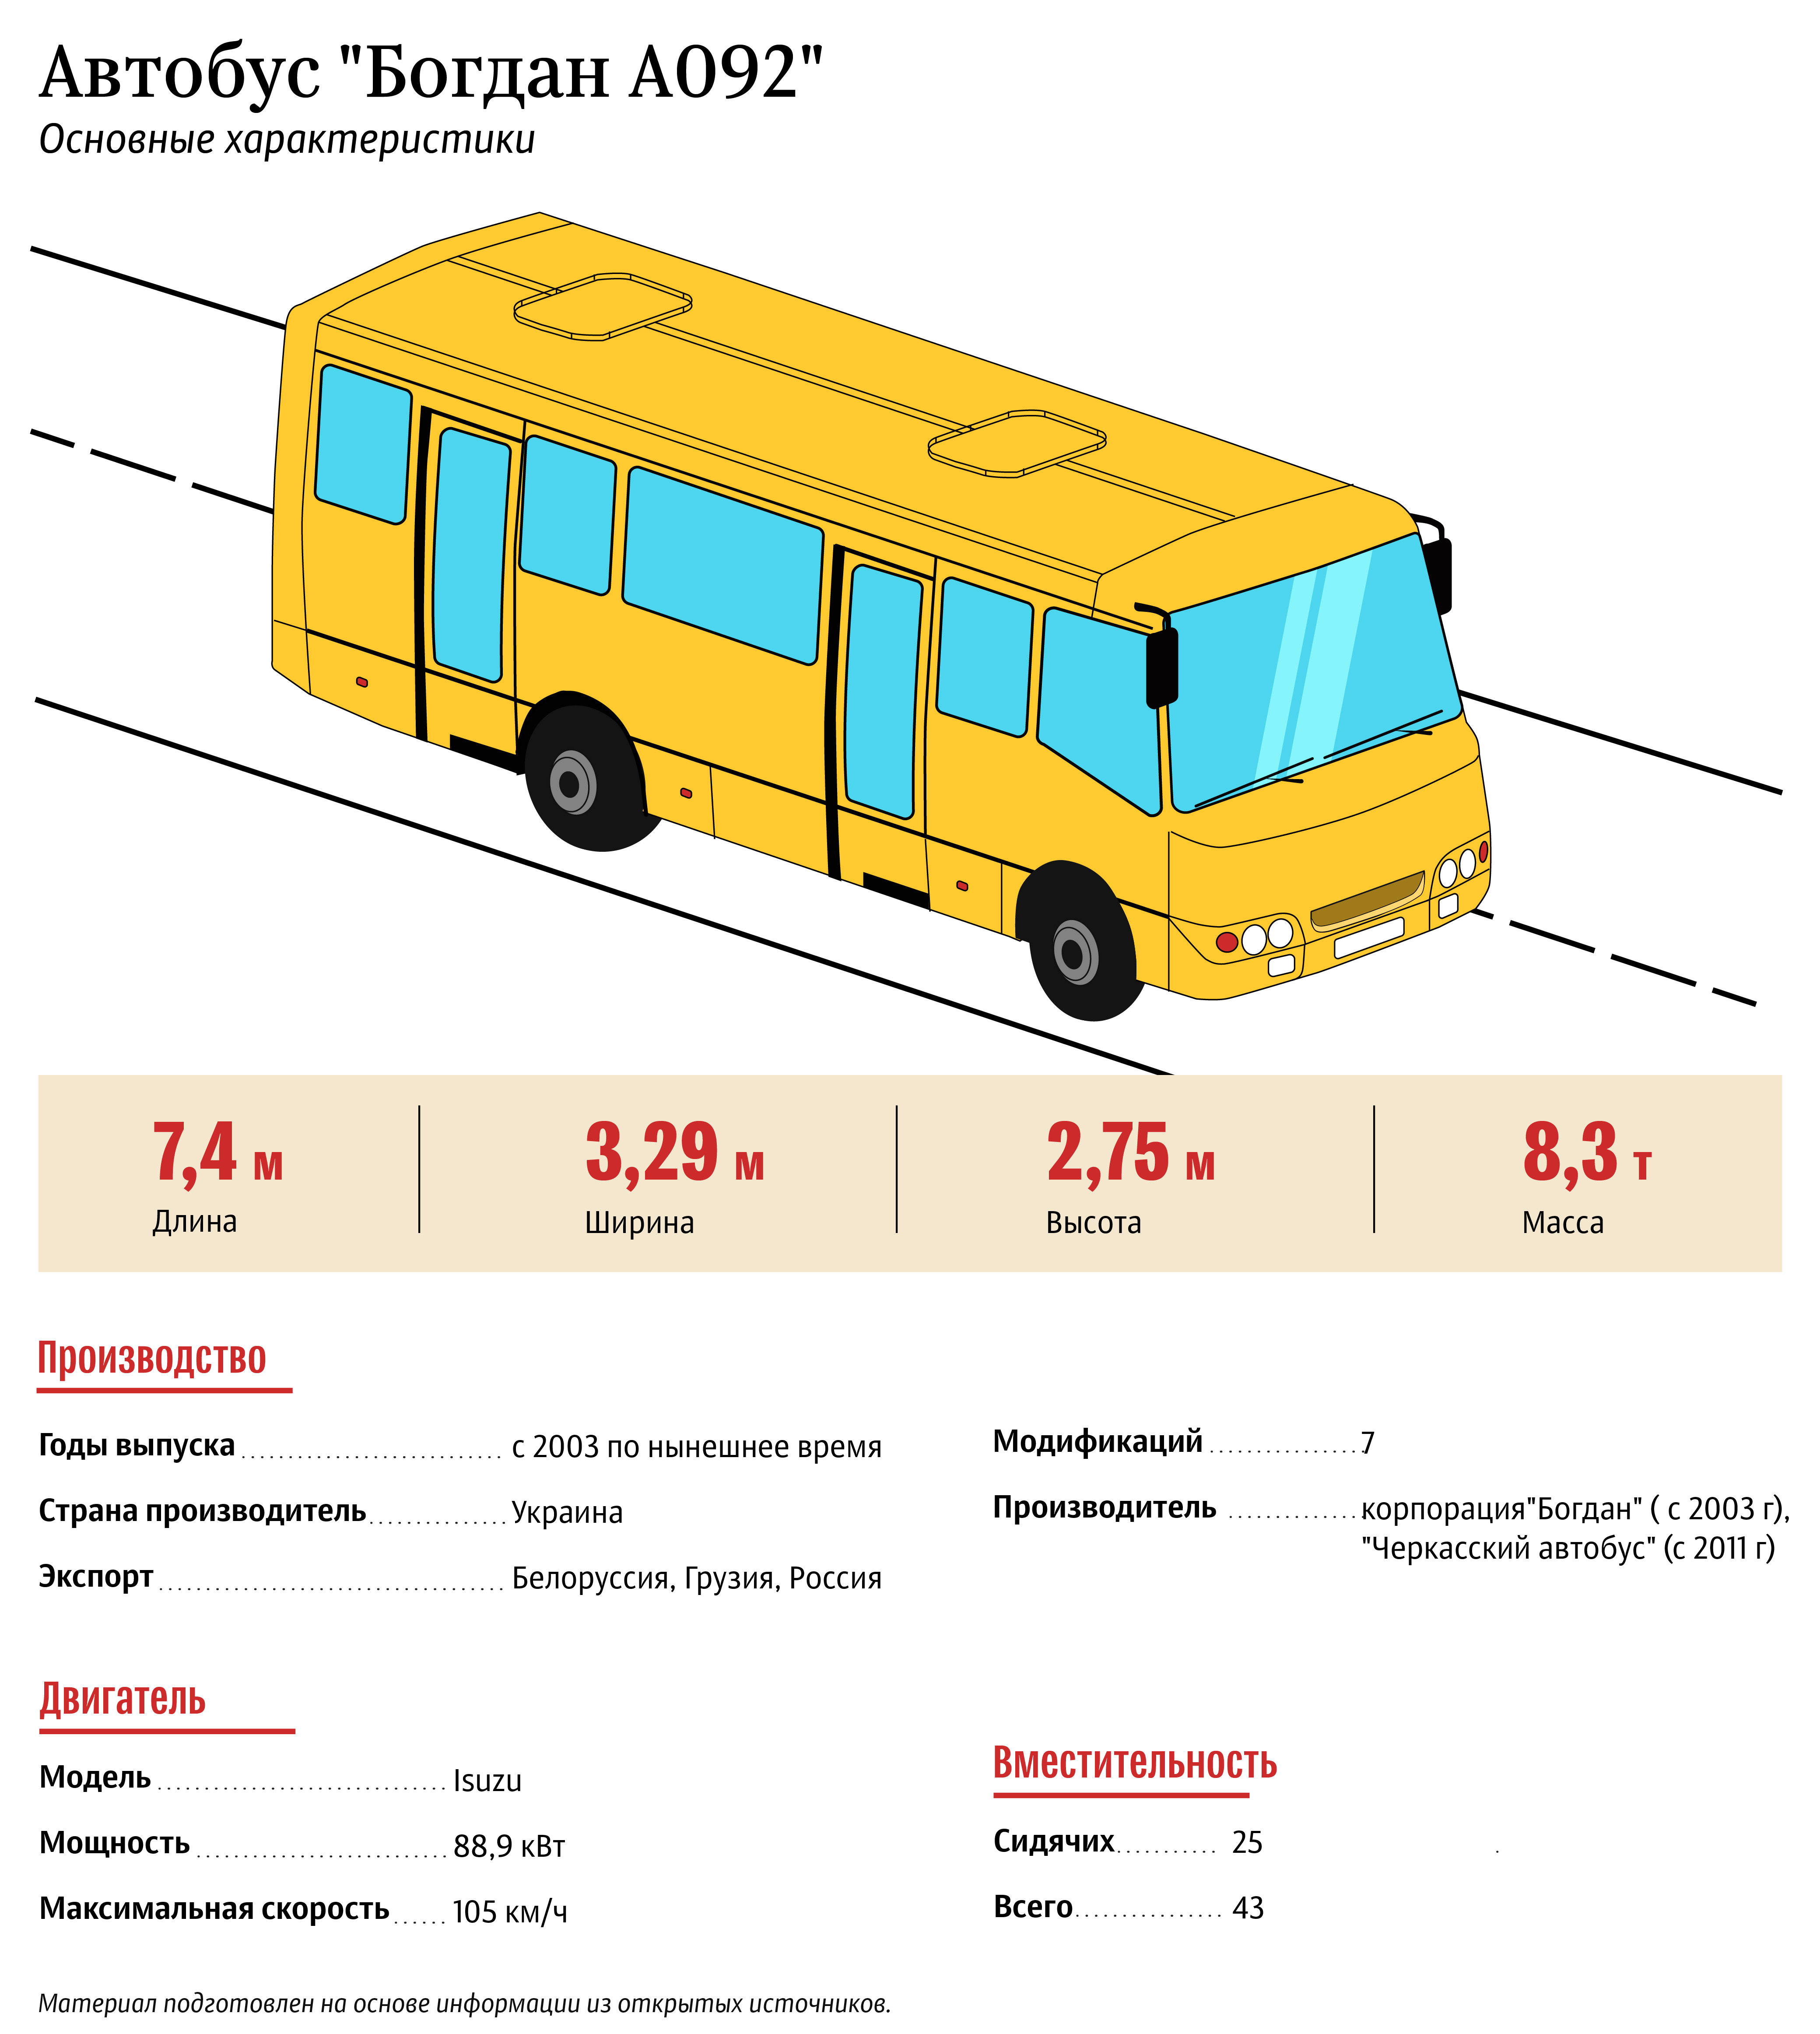 Автобус Богдан А092: Основные характеристики